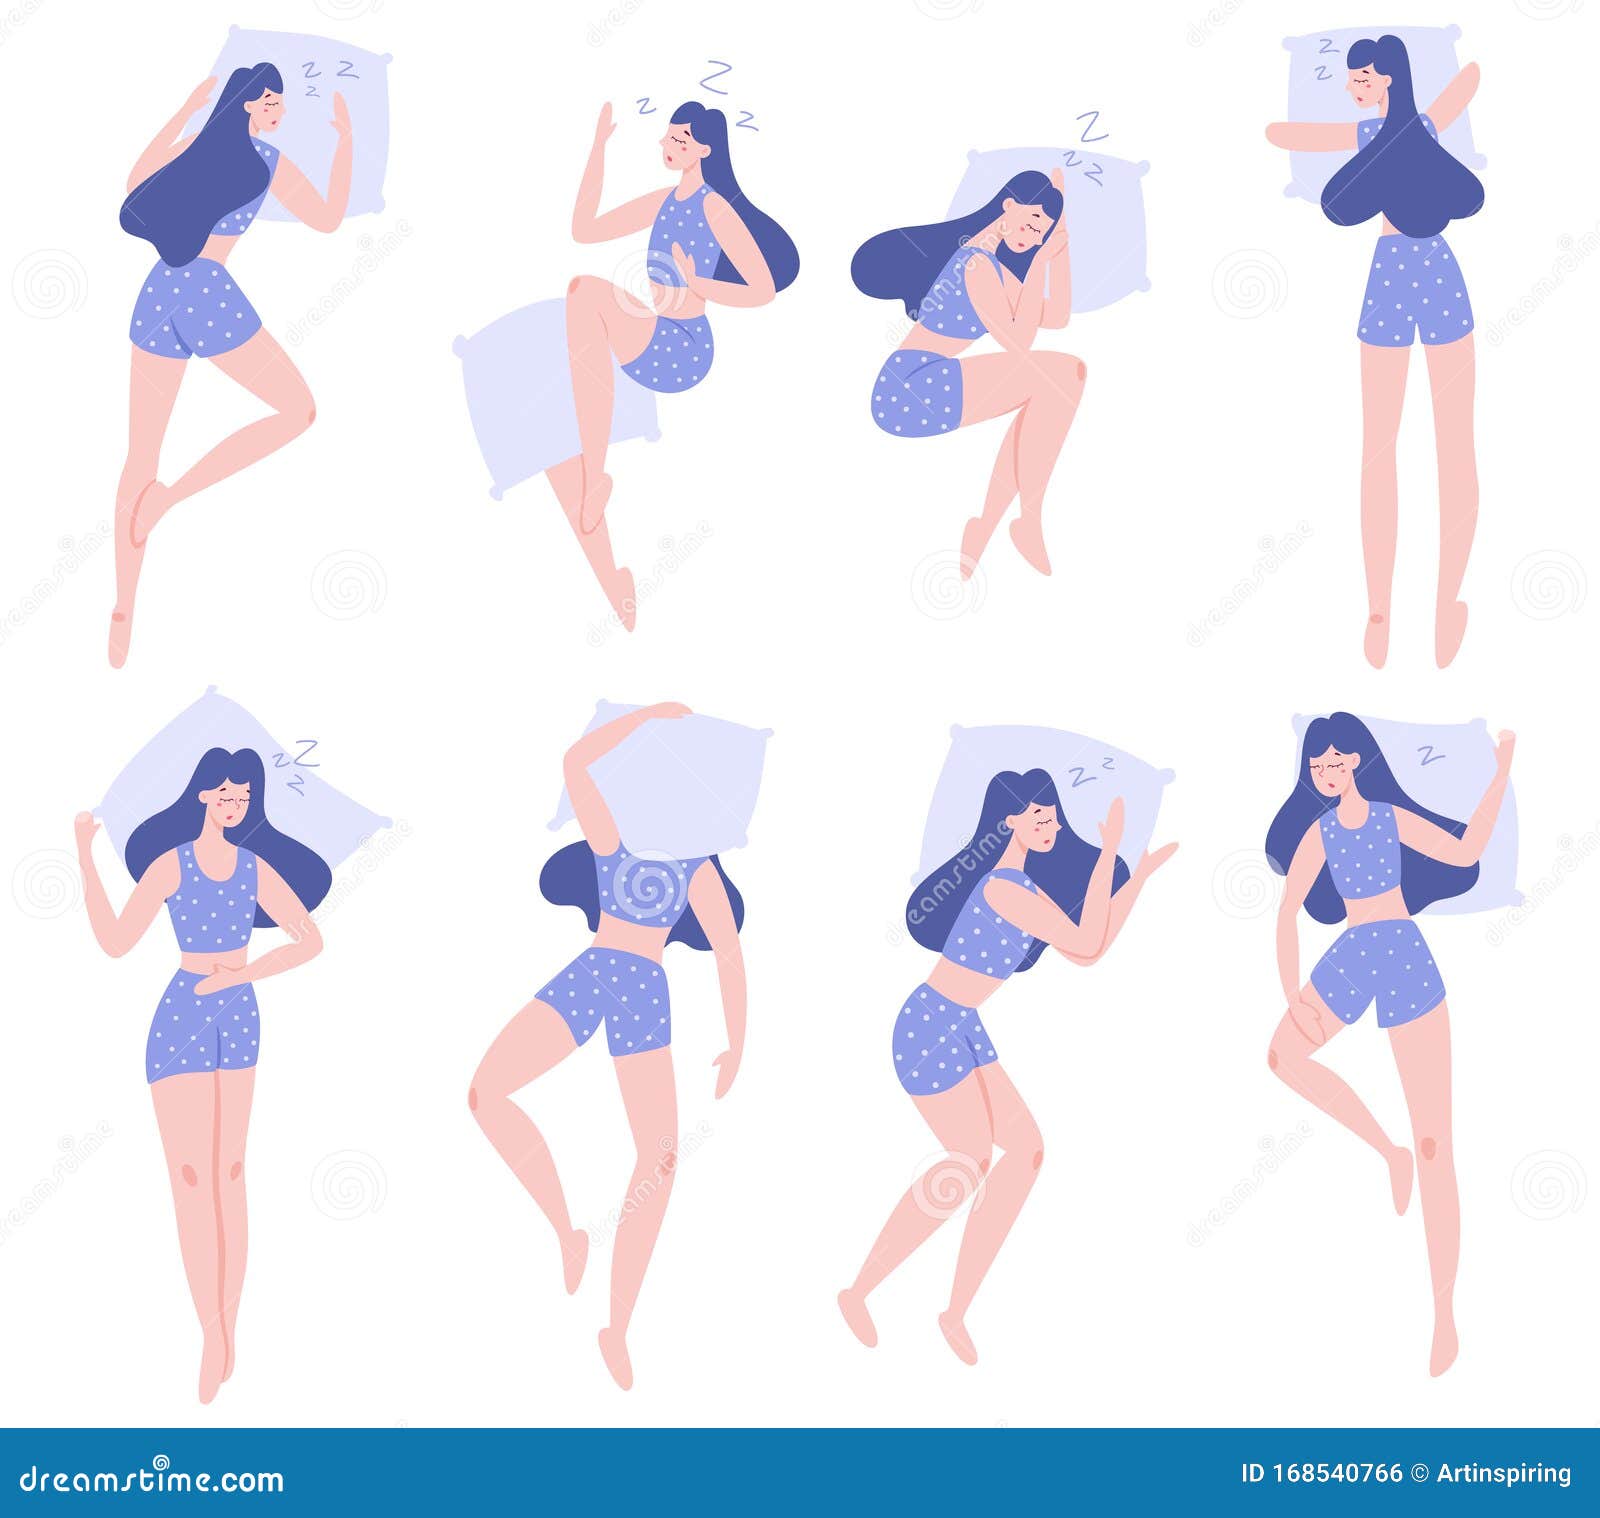 一组不同位置的妇女睡眠床上的女性人物向量例证 插画包括有床上的女性人物 一组不同位置的妇女睡眠 168540766